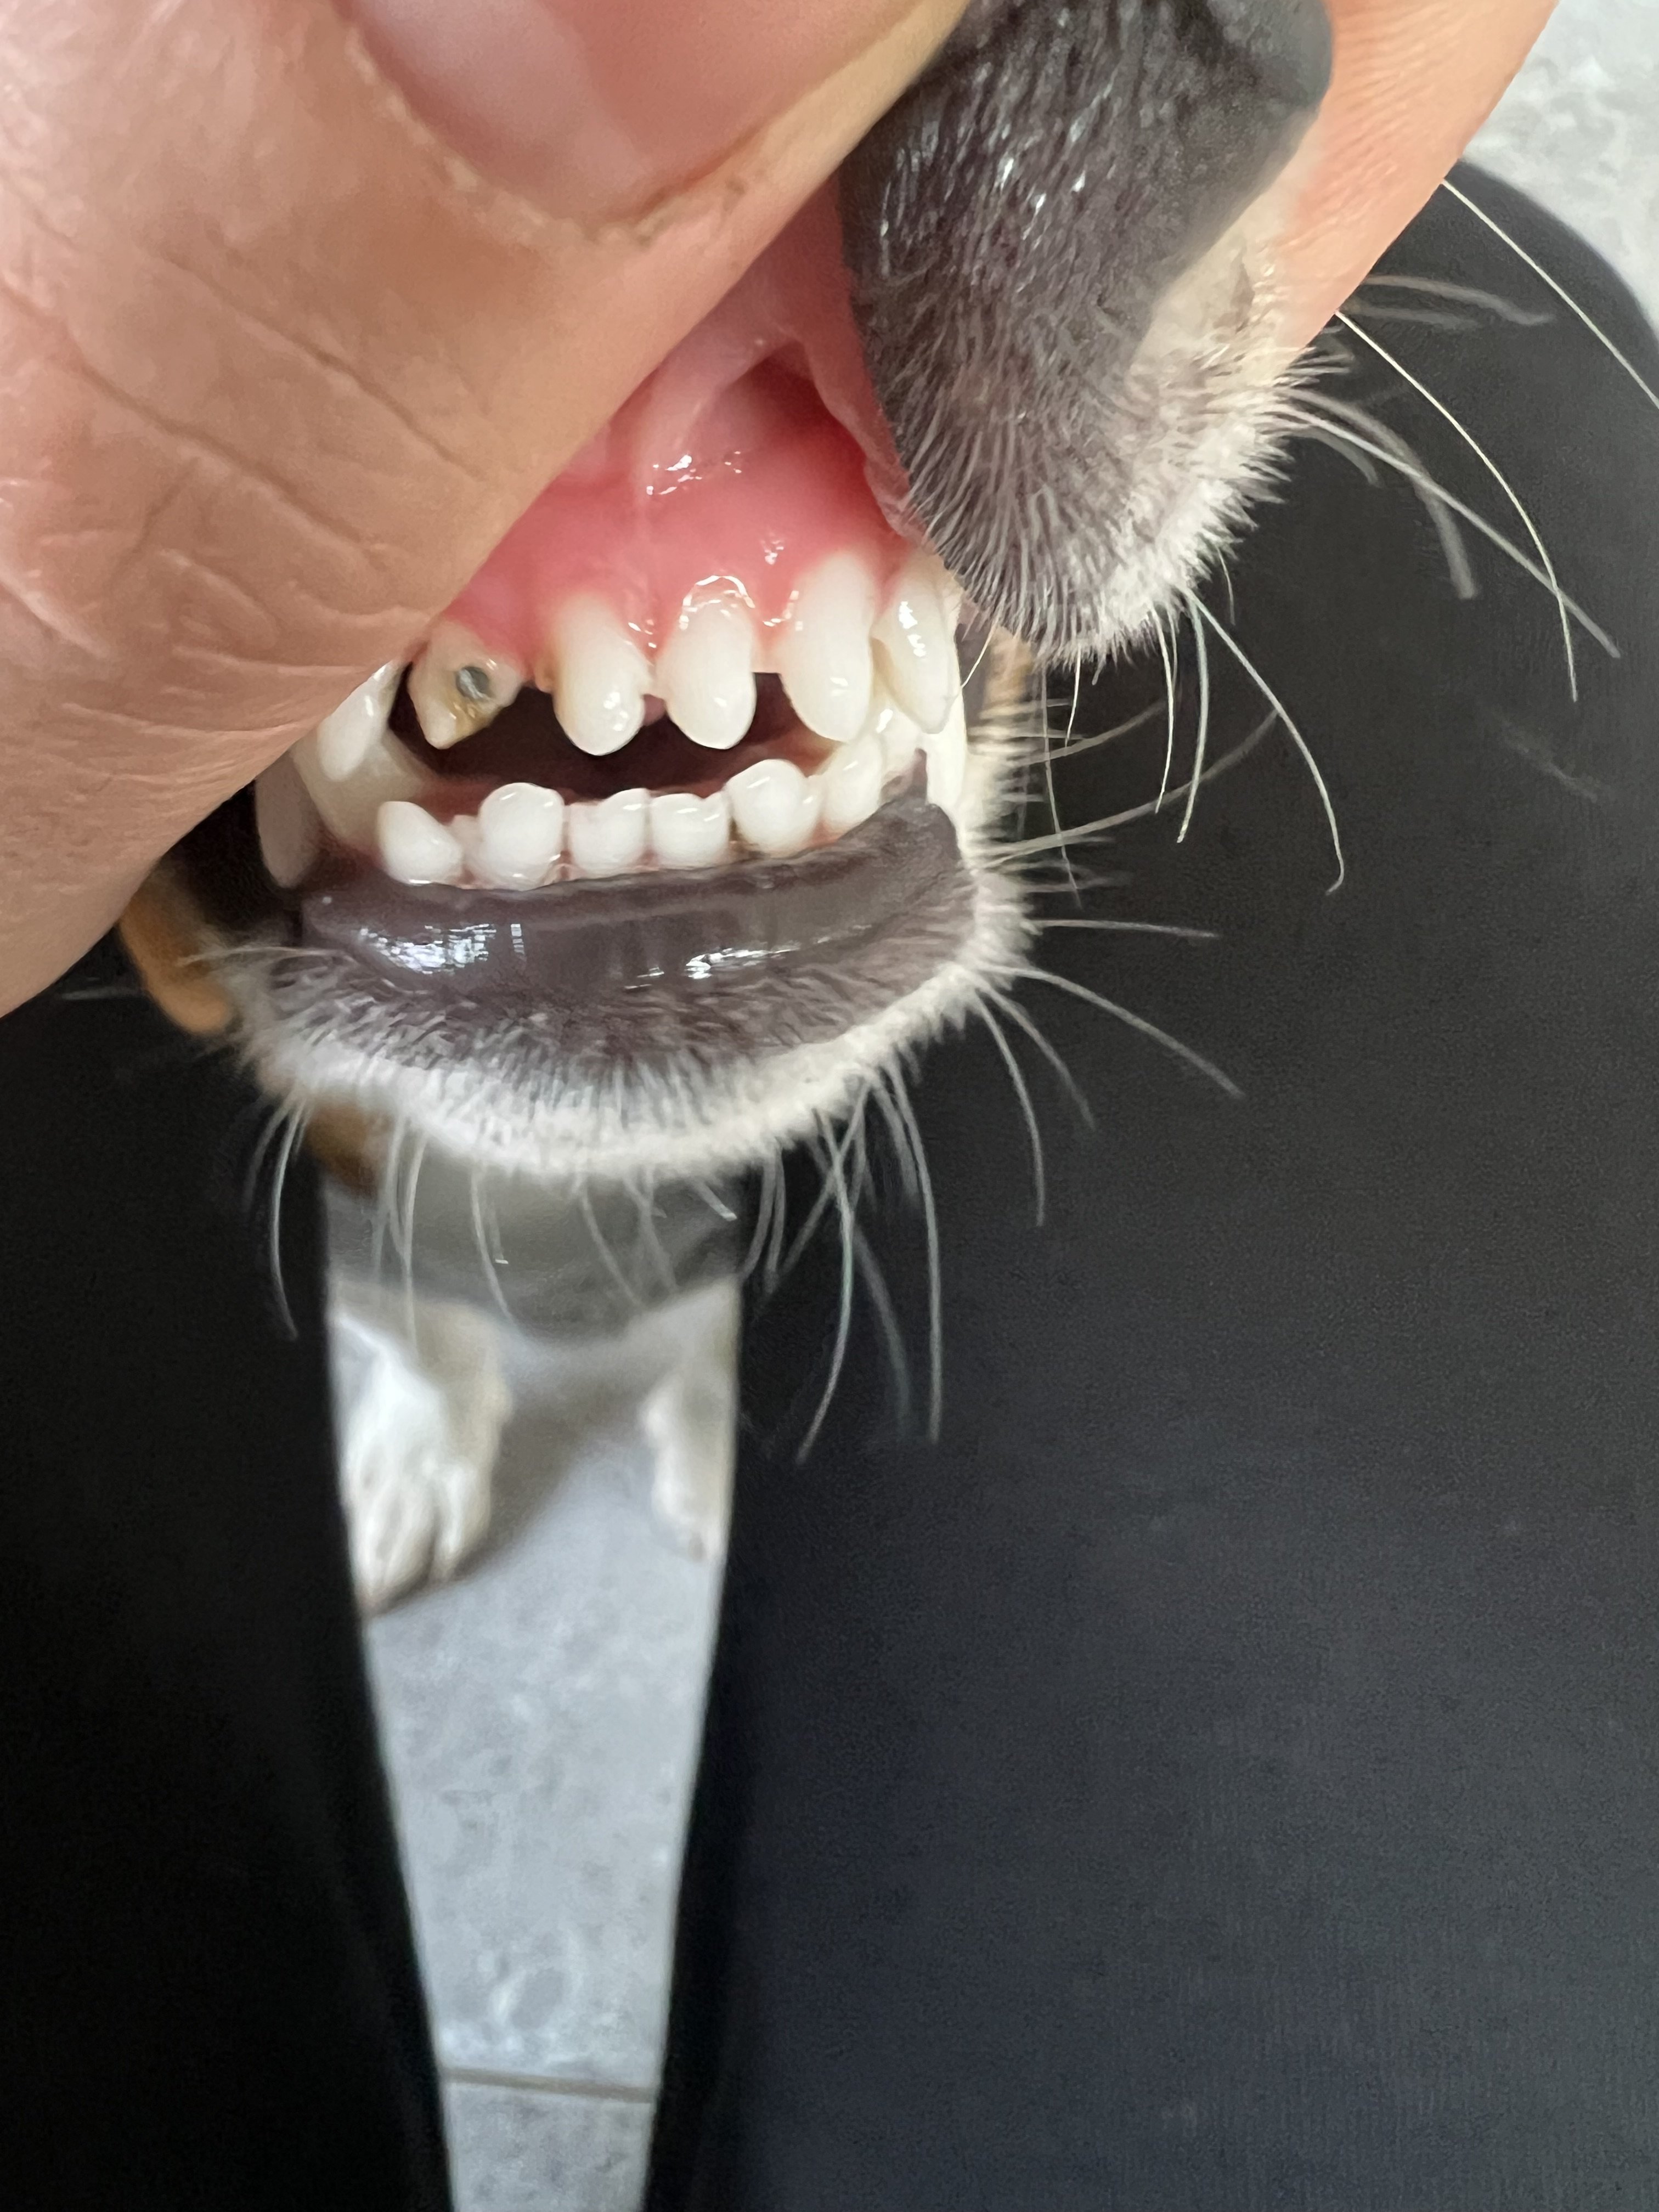 I think my puppy has a sore teeth